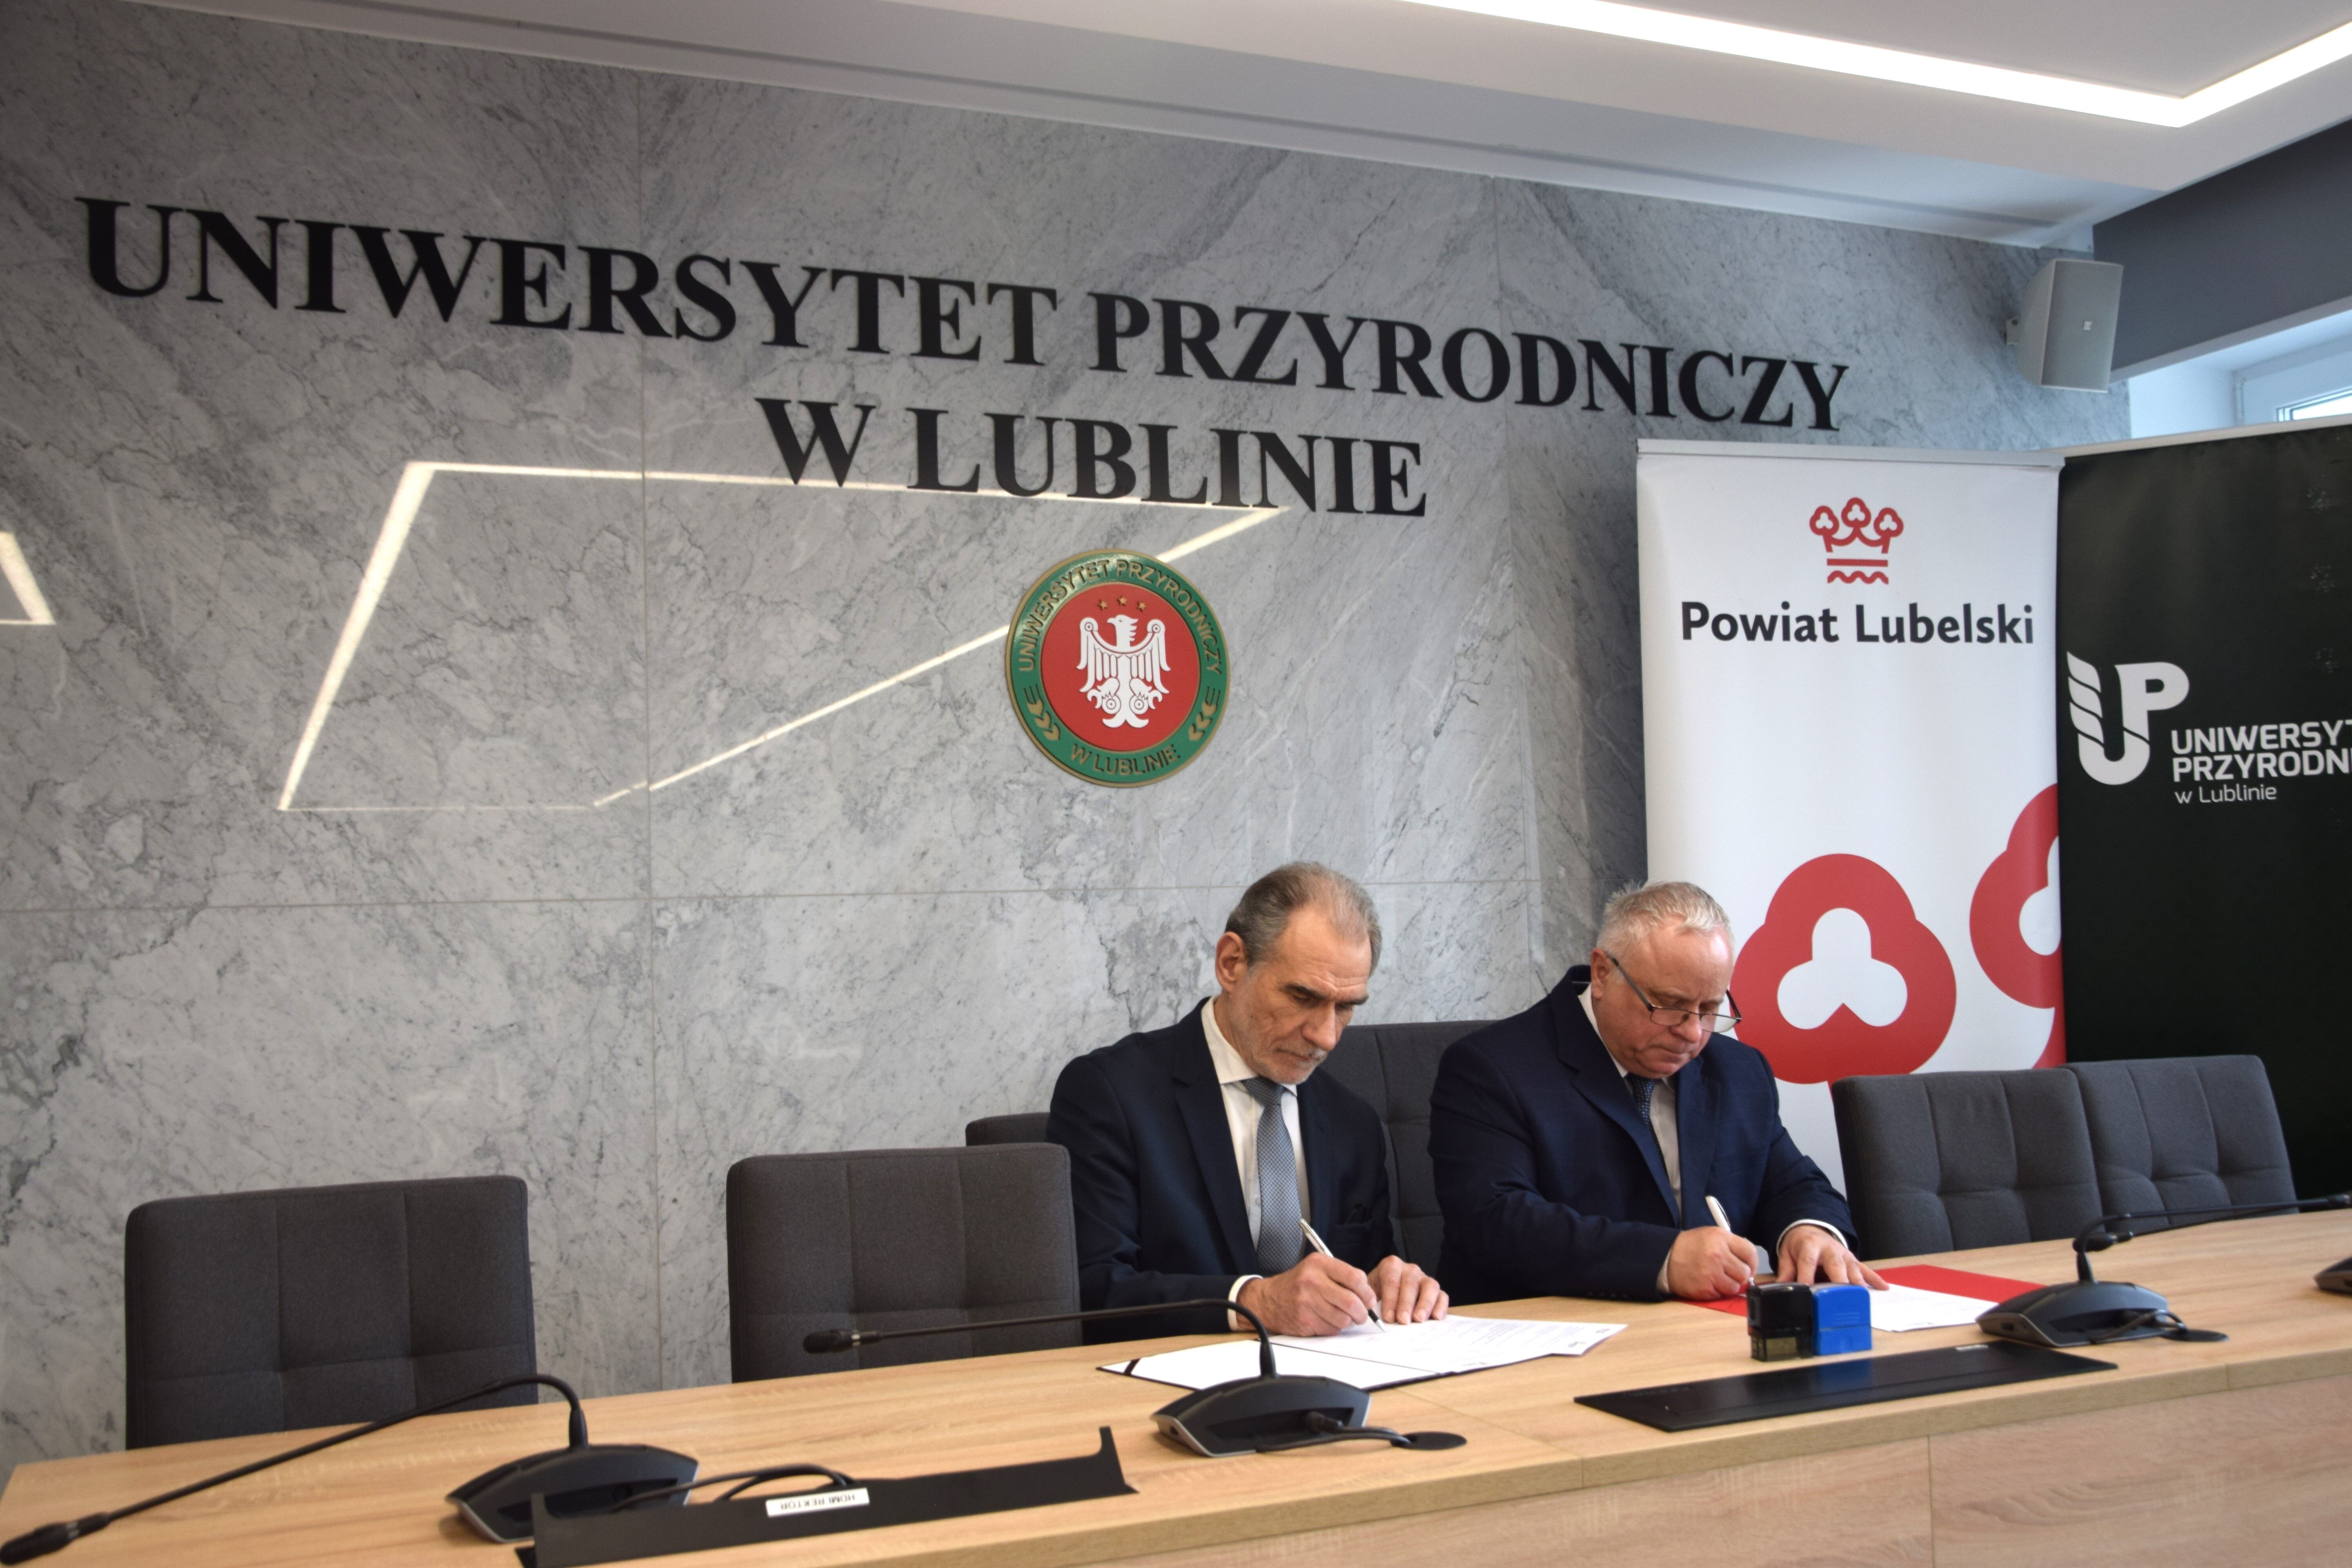 Dwóch mężczyzn podpisuje dokumenty w sali konferencyjnej z logotypami Uniwersytetu Przyrodniczego w Lublinie i Powiatu Lubelskiego.